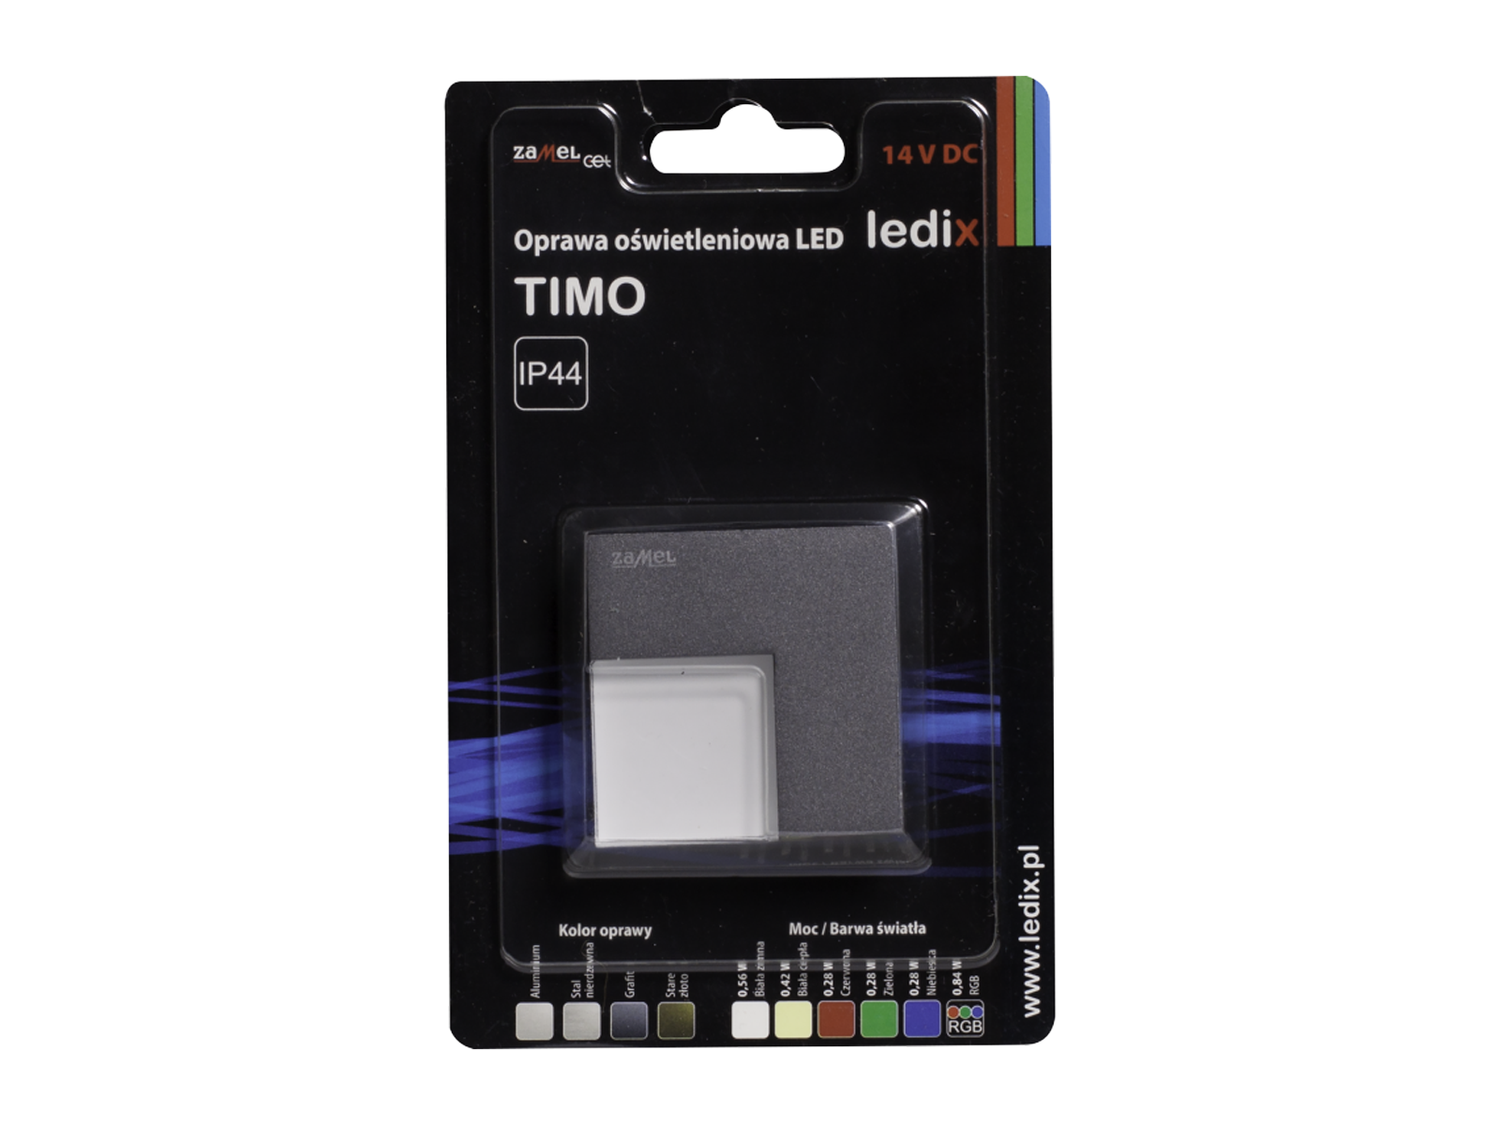 Svítidlo LED na omítku bez rámečku LEDIX TIMO 14V DC, grafit, RGB, IP44